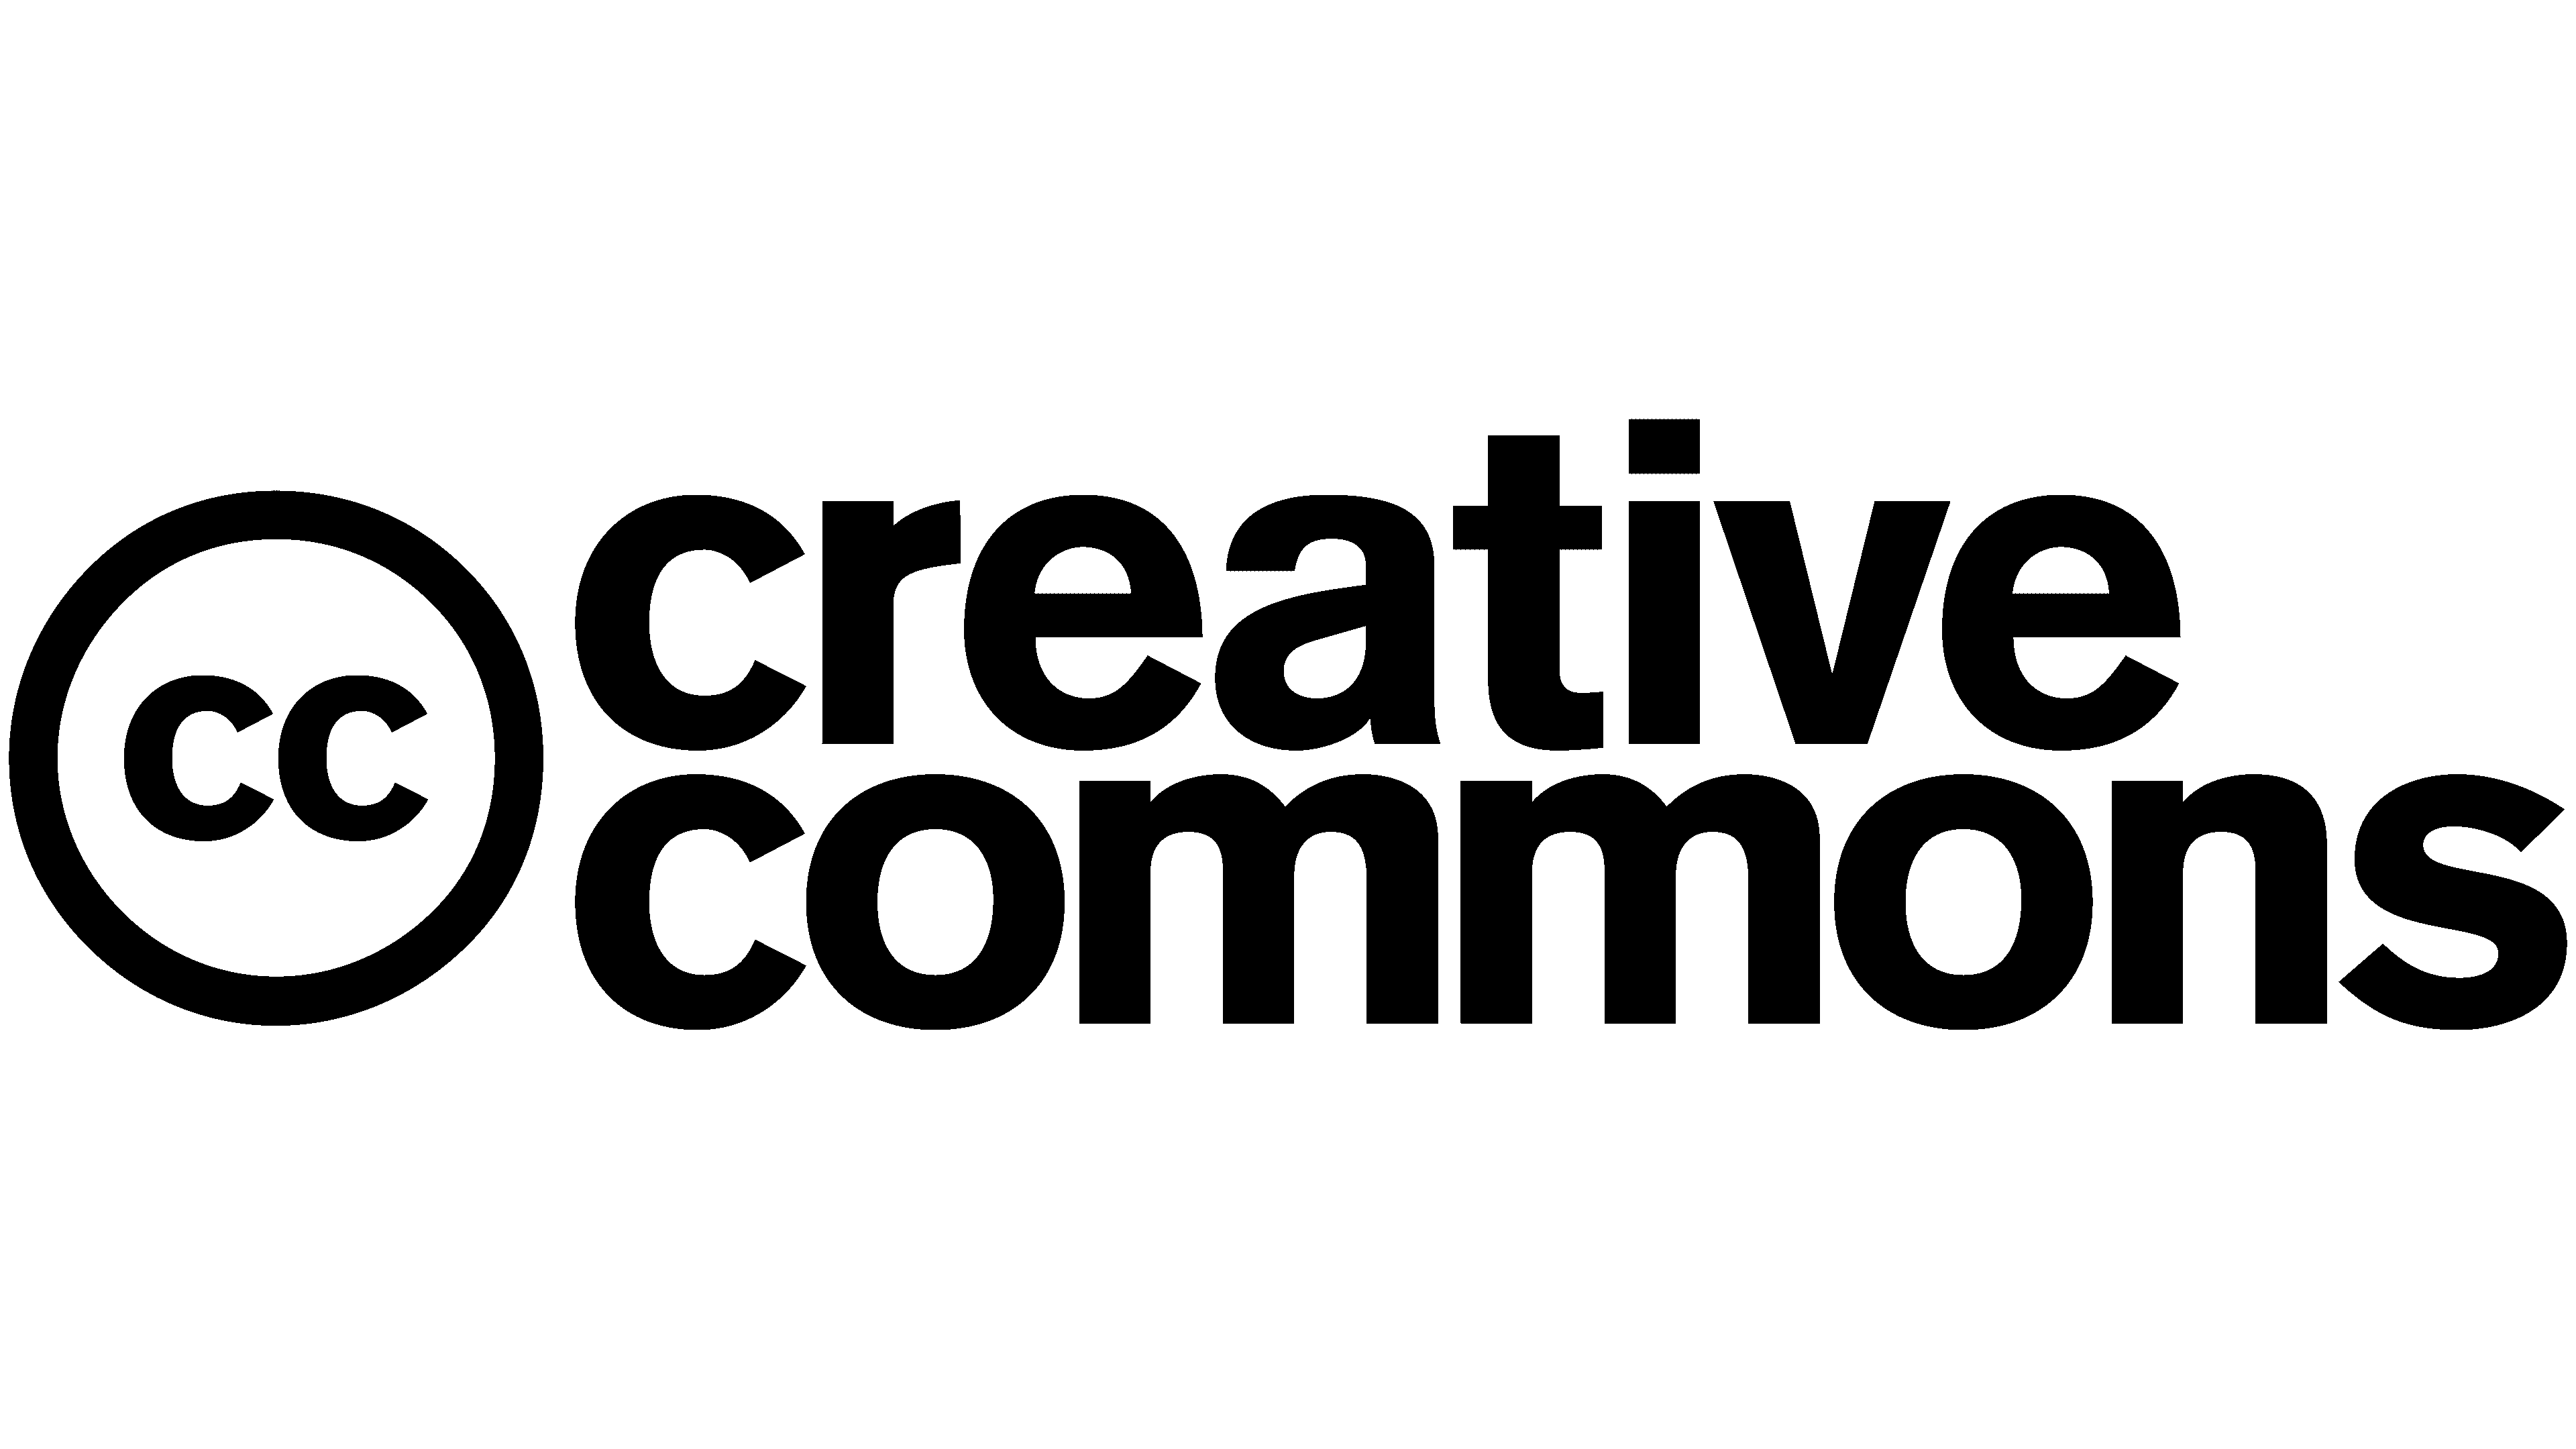 Creative commons license. Creative Commons. Лицензии креатив Коммонс. Creative Commons cc0 картинки. Creative Commons знак.